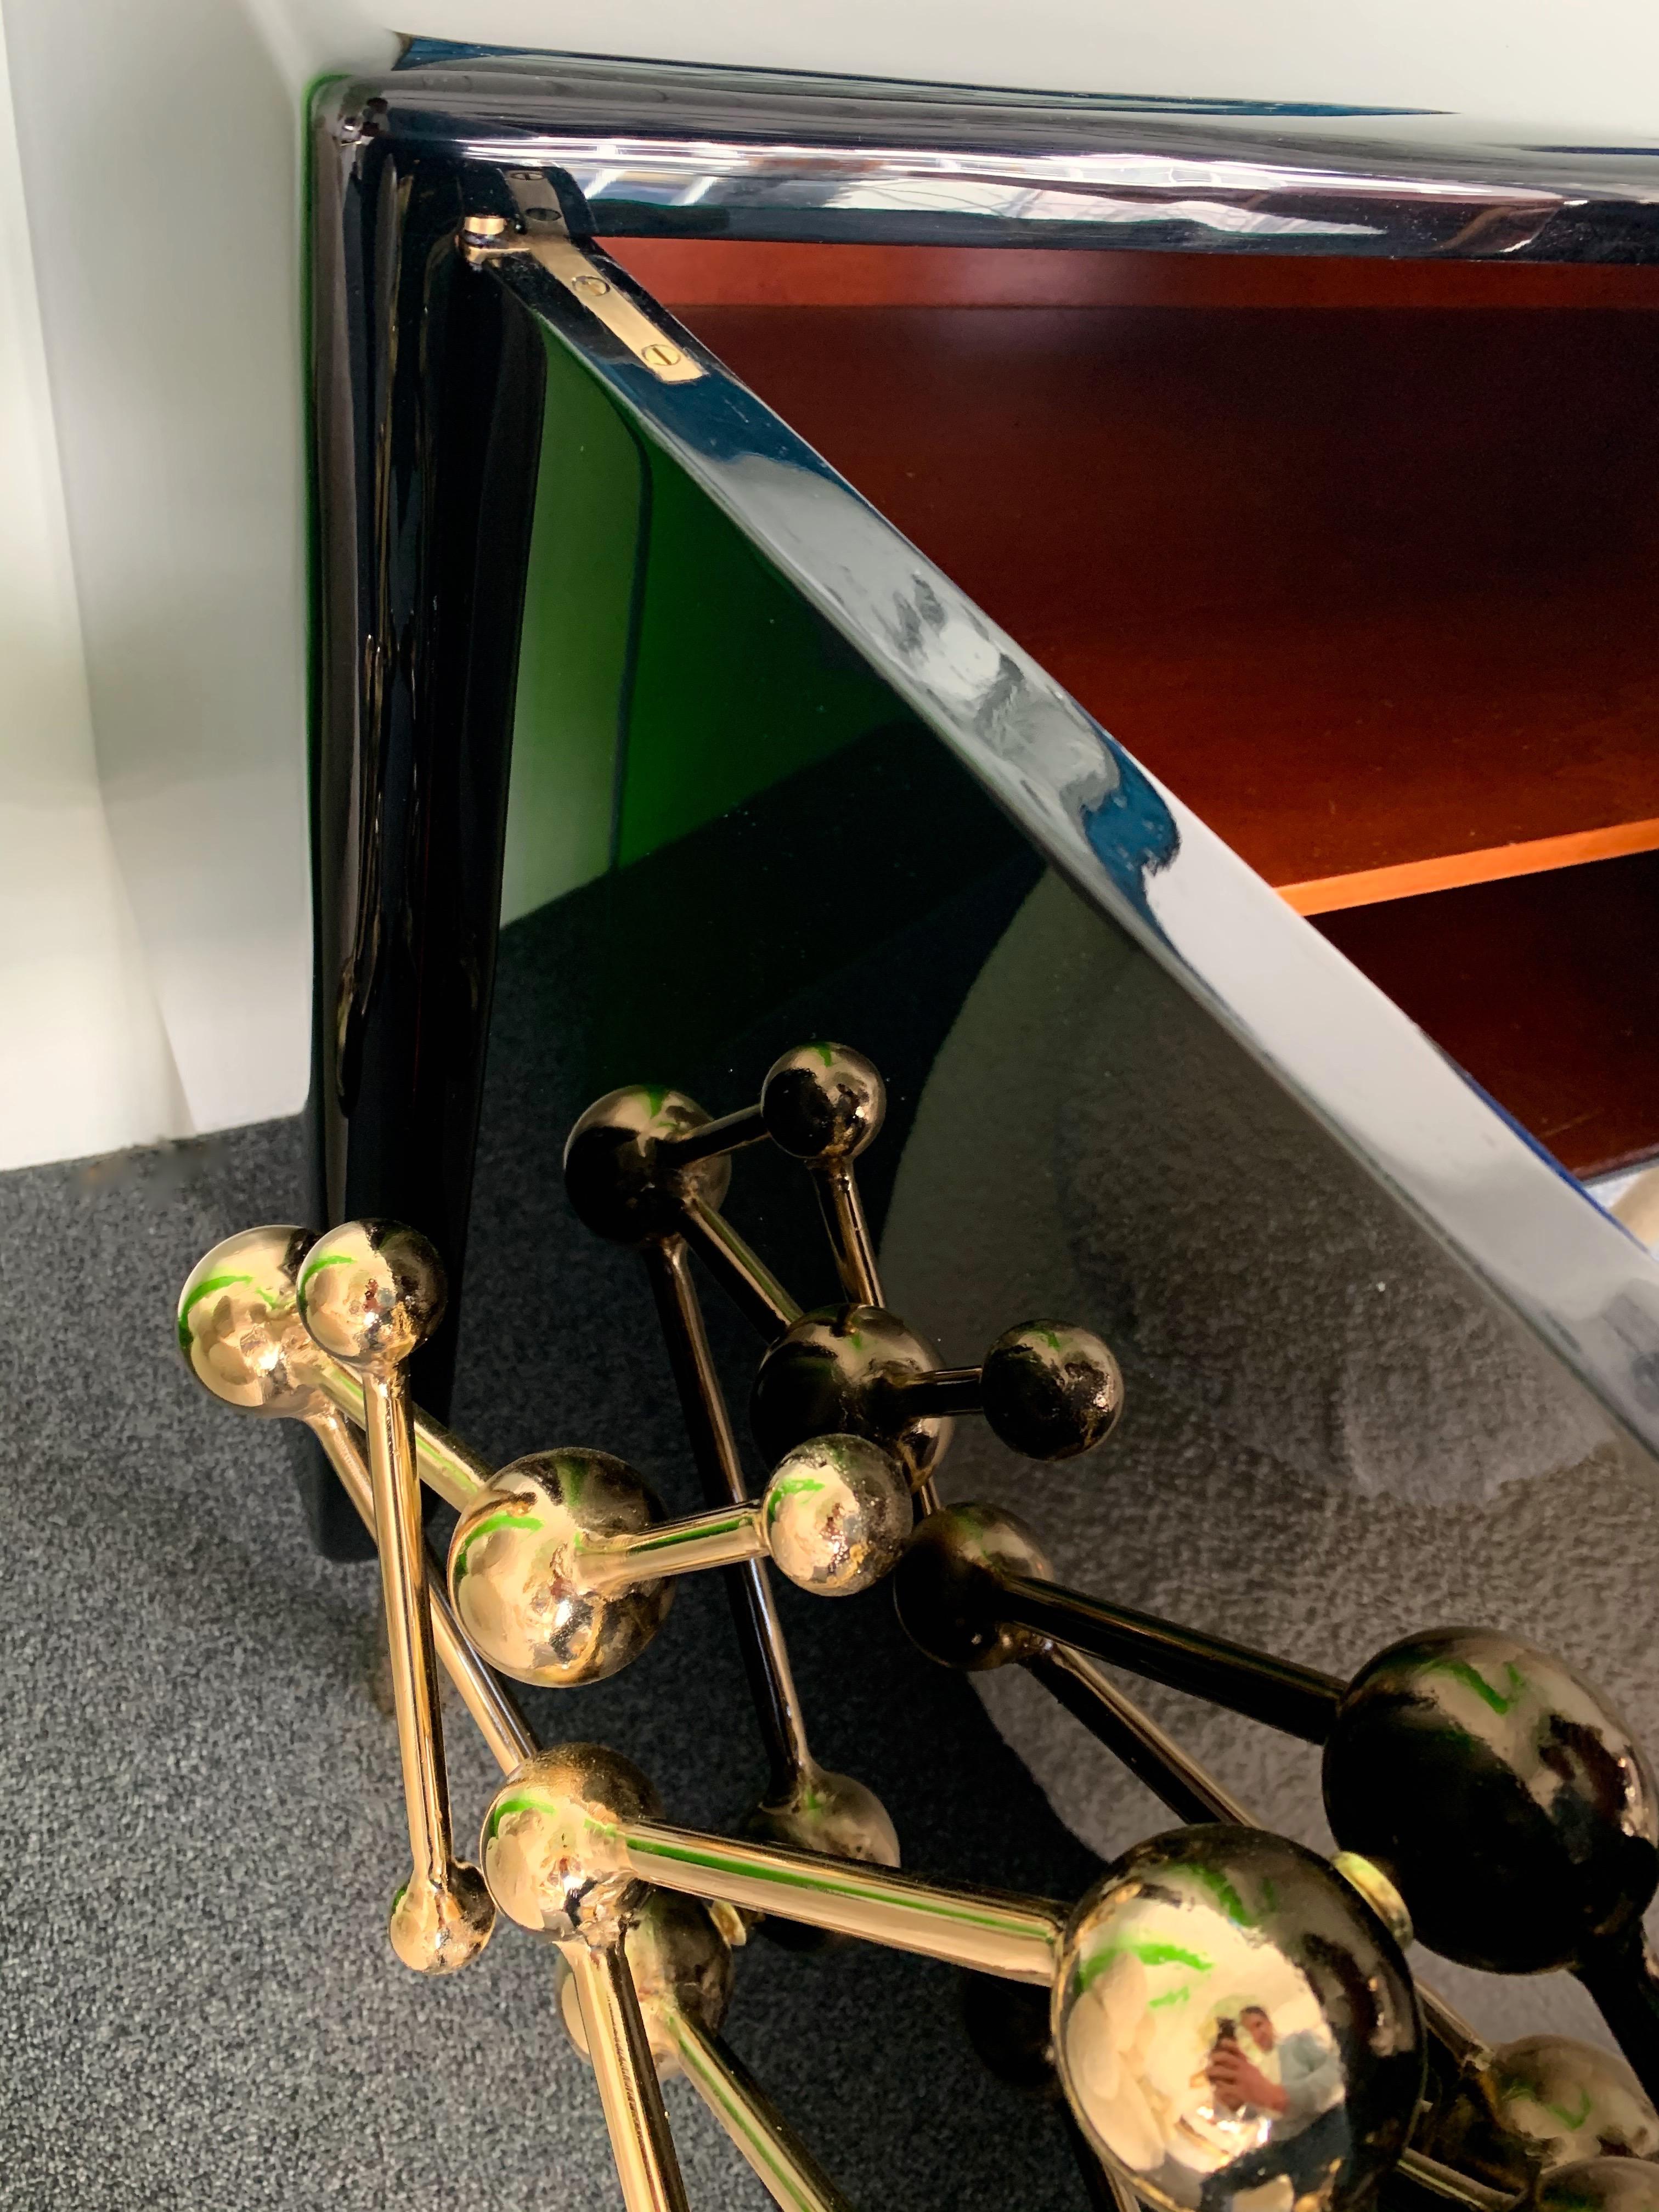 Meubles buffets contemporains Atomo laqués noir du designer italien Antonio Cagianelli , poignée sculpture et pieds en fer forgé doré en bain d'or 24 carats, dans un style laiton

Prix par cabinet.